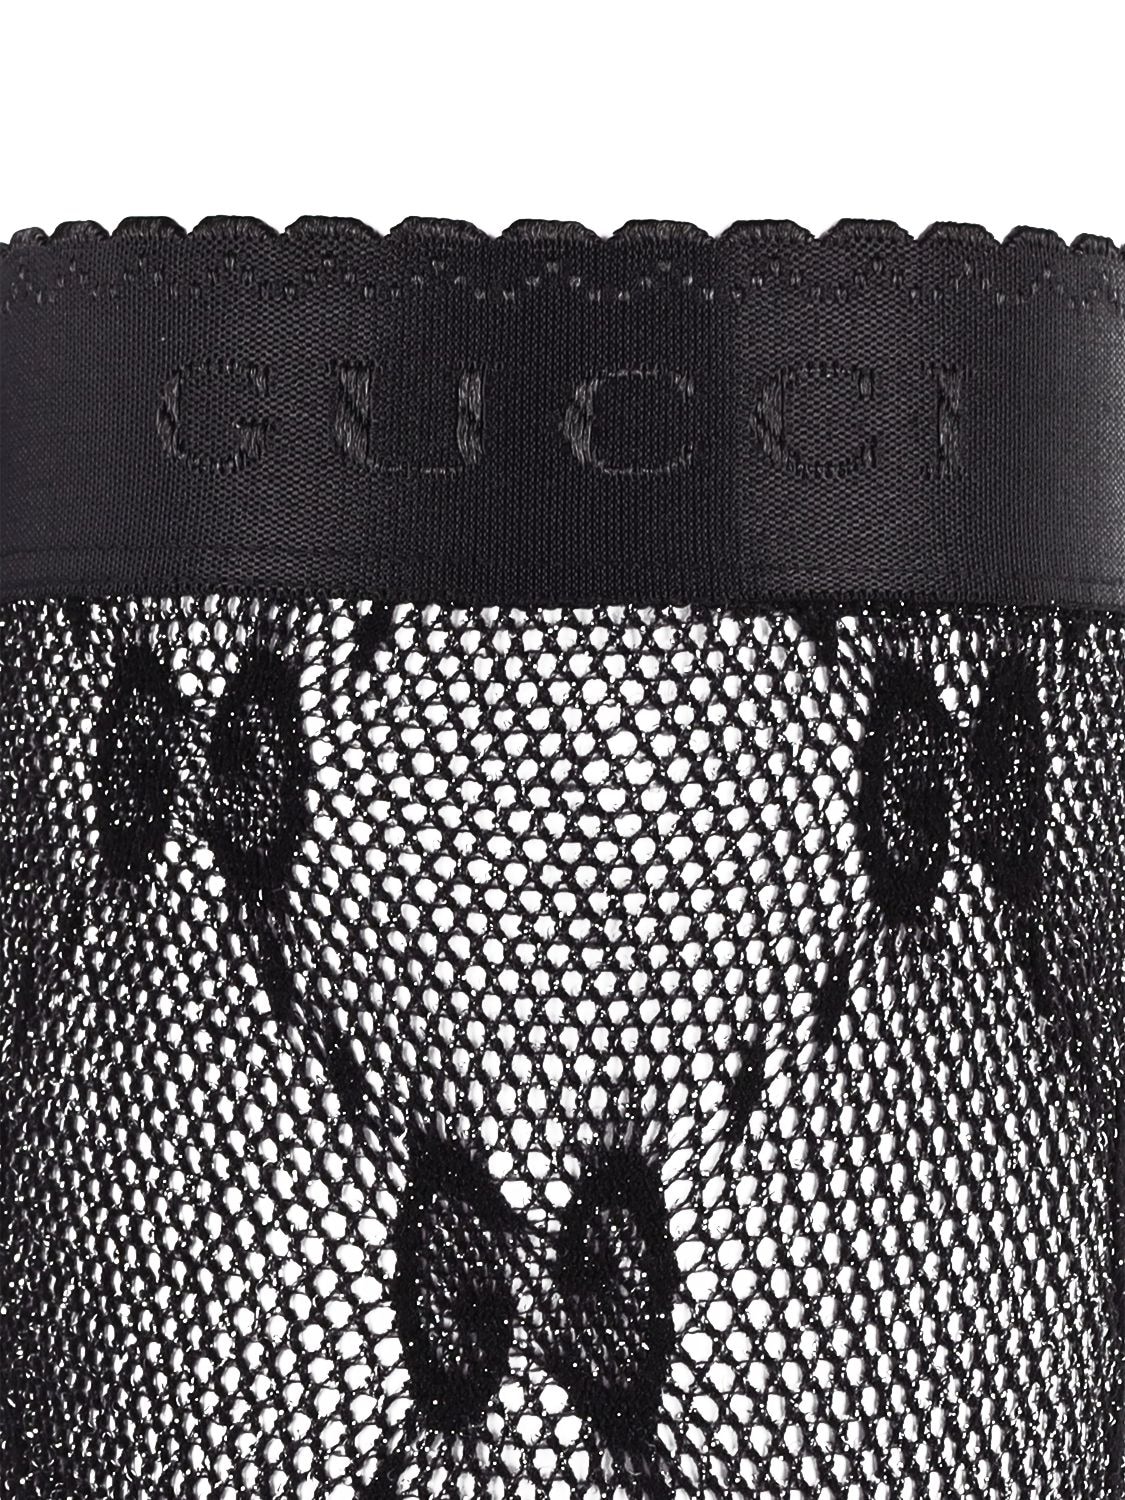 Gucci - GG Motif Open-Knit Tights - Women - Spandex/Elastane/Polyamide/Metallic Fibre - L - Black